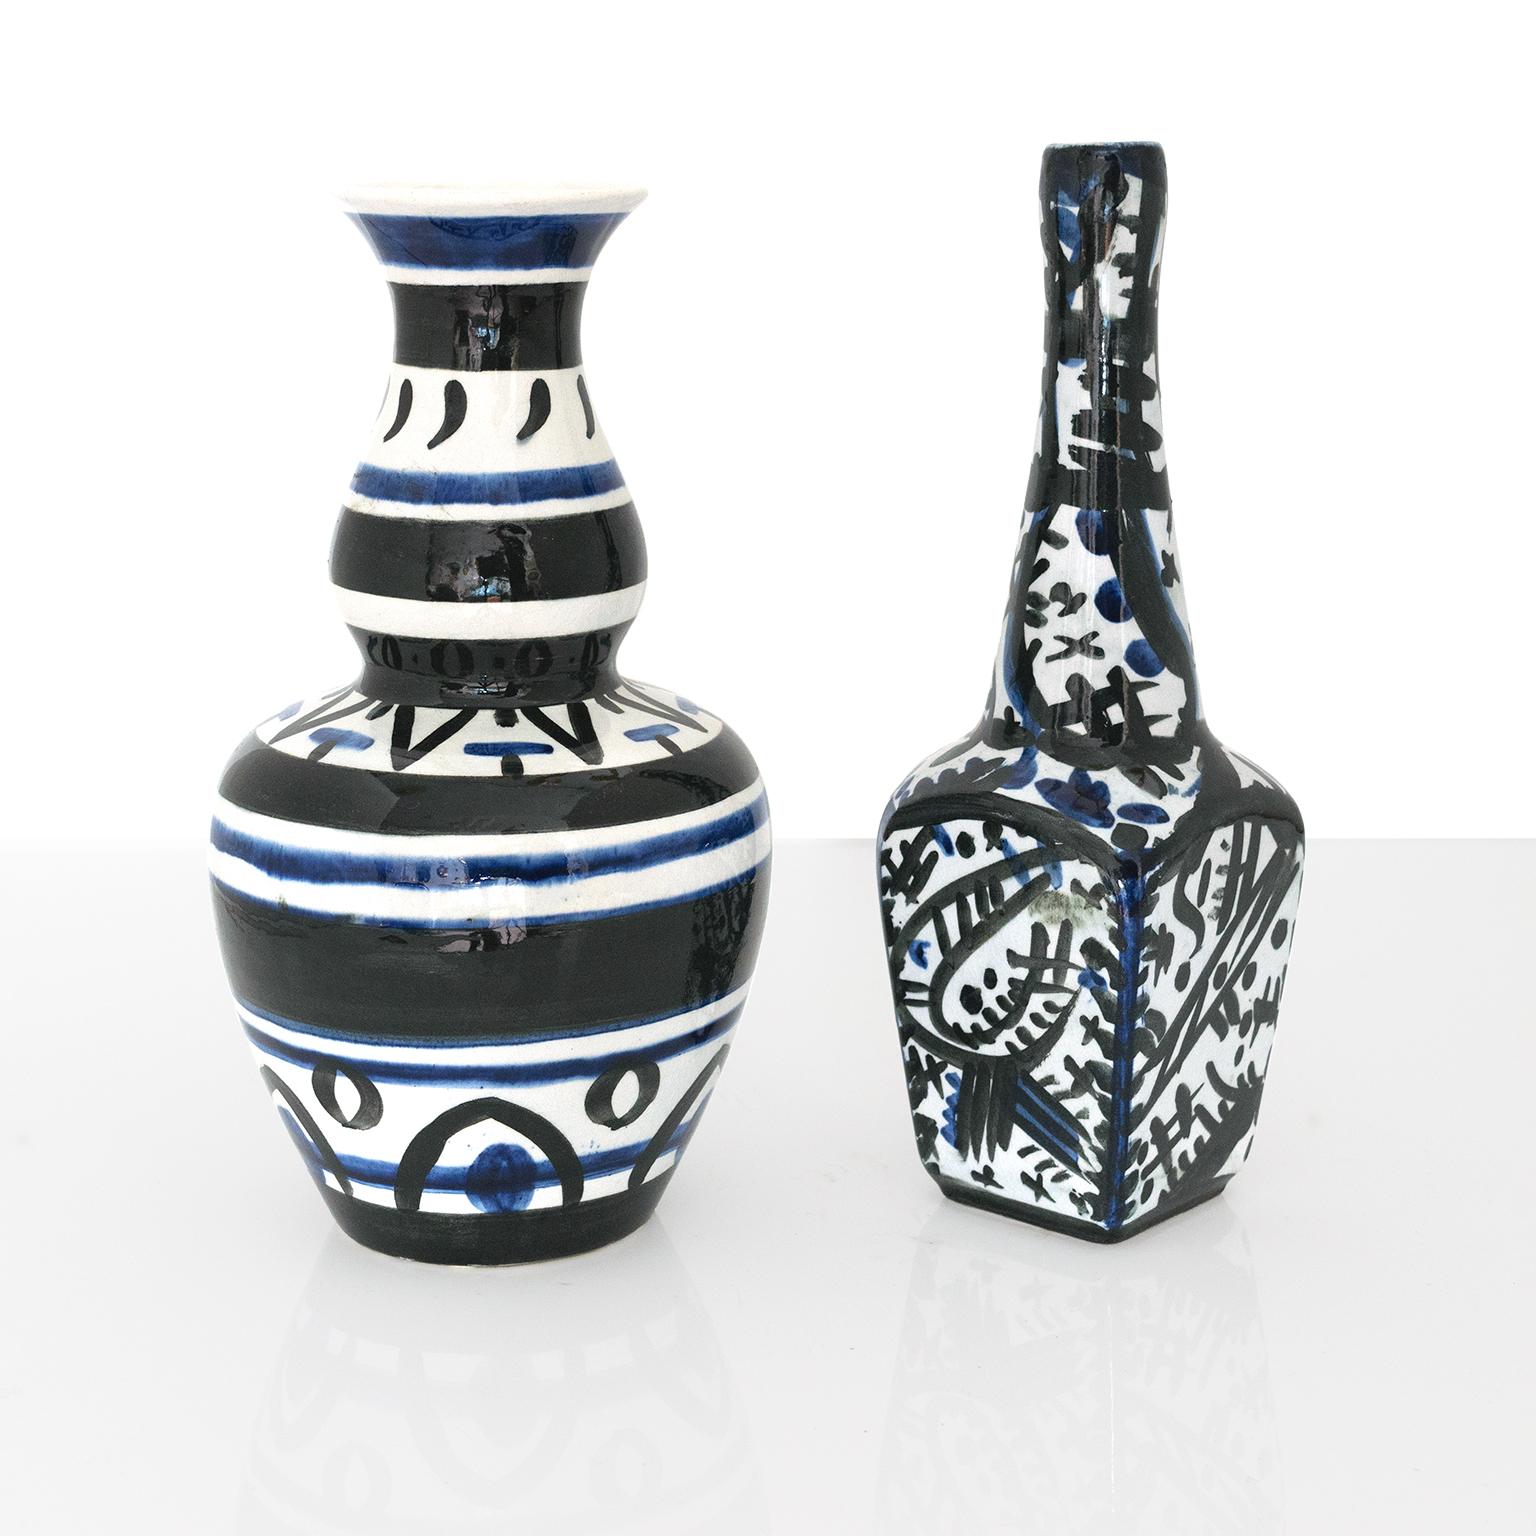 Zwei avantgardistische handdekorierte Keramikvasen von Edward Hald aus den 1920er Jahren. Hold verwendete blaue und schwarze Glasuren auf weißen Scherben, um abstrakte und geometrische Muster zu schaffen, hergestellt von Rorstrand 1920, Schweden